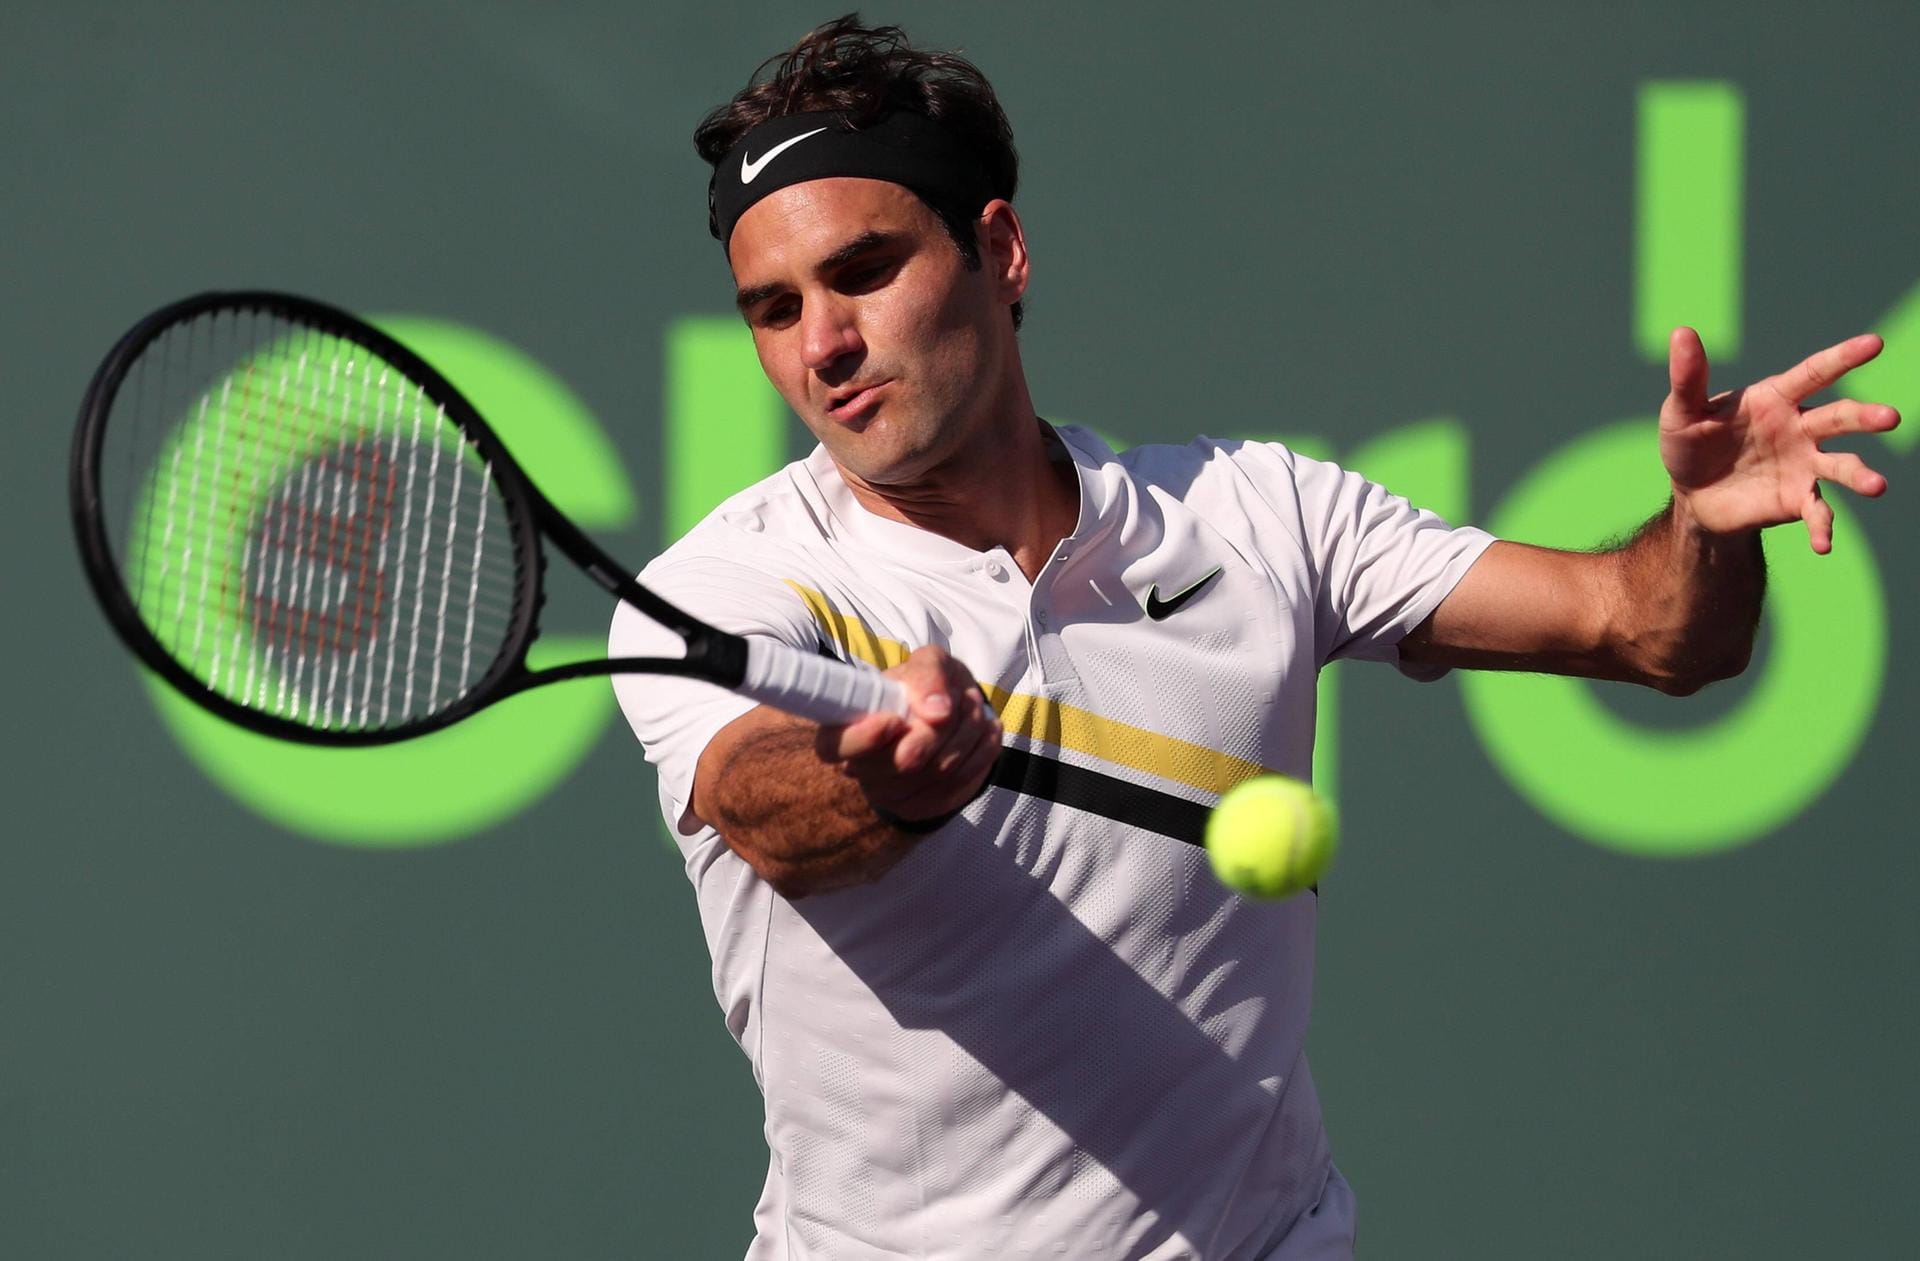 7. Platz: Der Schweizer Roger Federer ist mit 77,2 Millionen Dollar der bestbezahlte Tennisspieler der Welt.